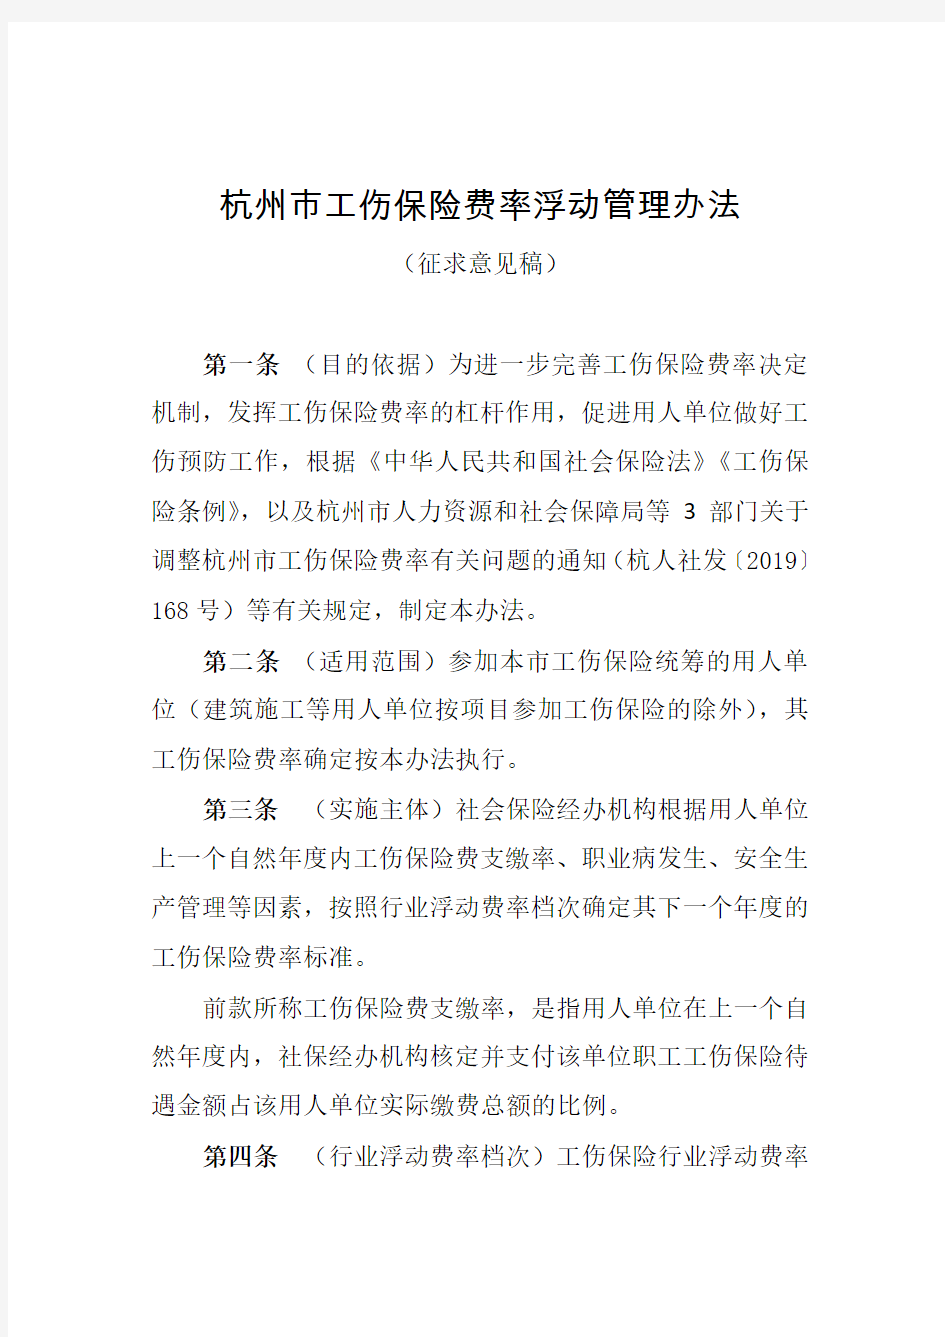 杭州市工伤保险费率浮动管理办法